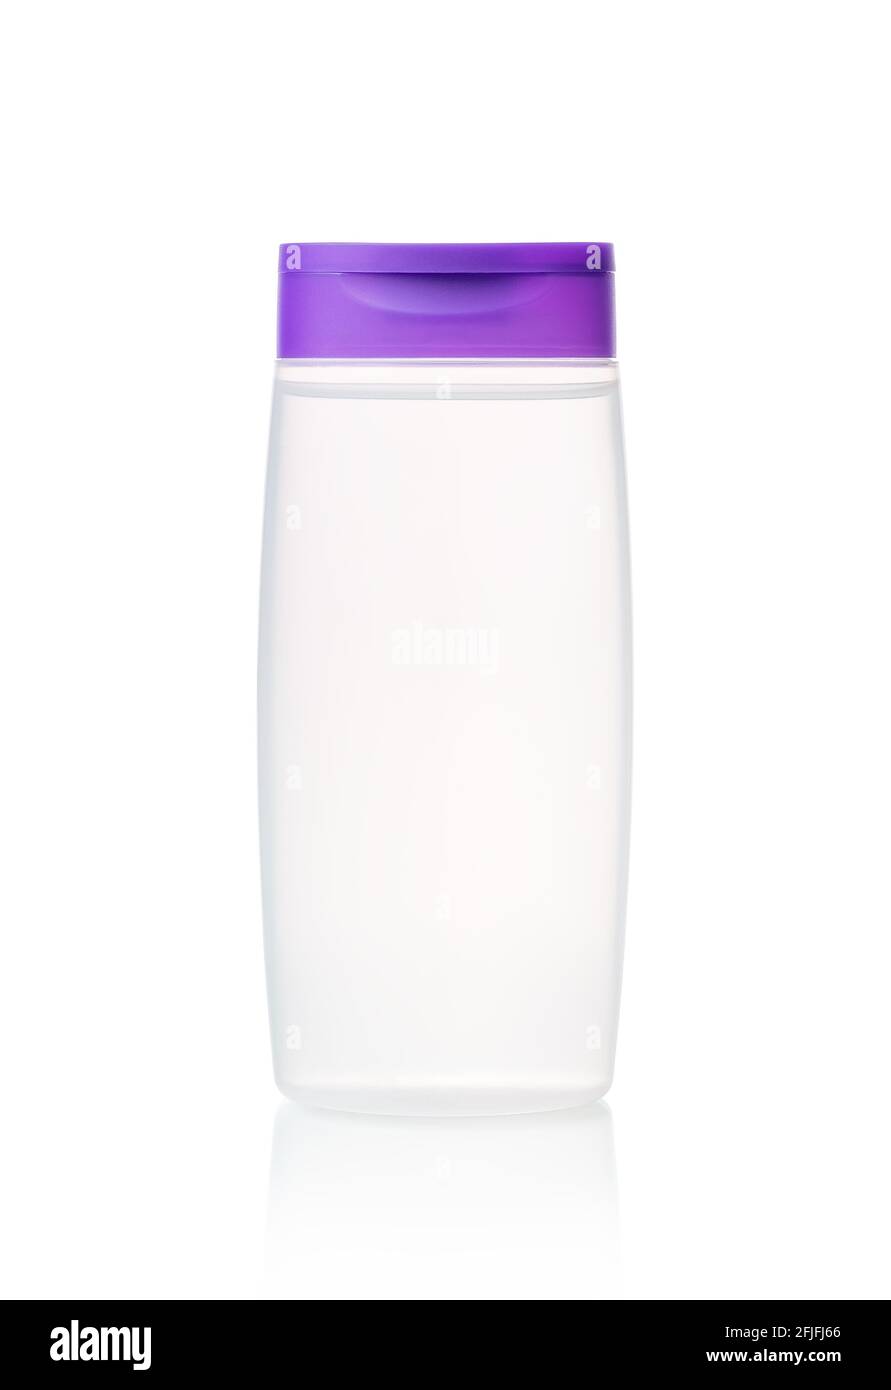 Encre faciale ou eau micellaire en flacon translucide avec couvercle violet isolé sur blanc. Contenant cosmétique non étiqueté pour les concepts de soins de la peau et de beauté. Banque D'Images